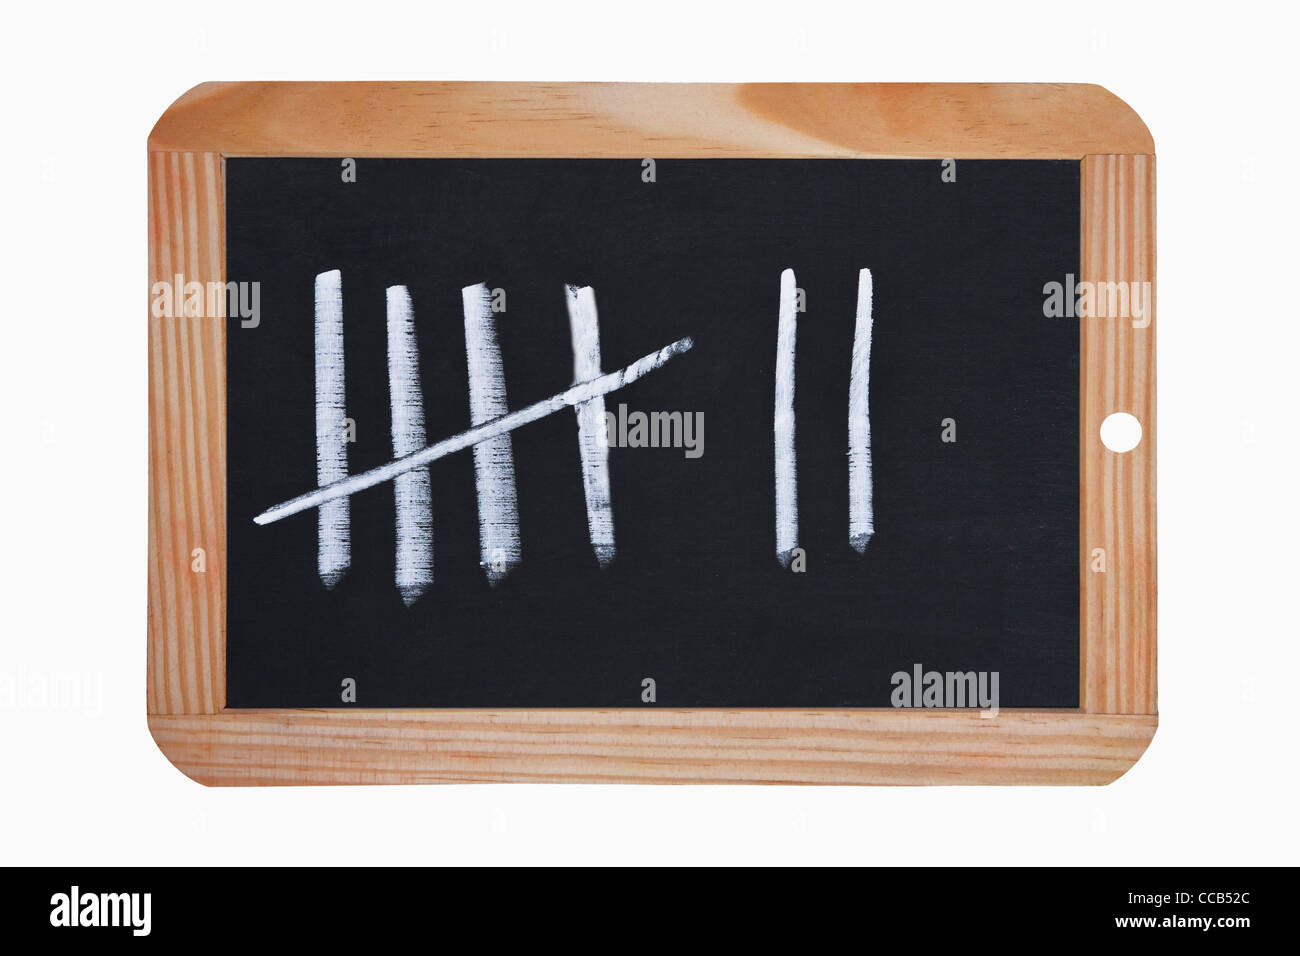 Detailansicht einer Schiefertafel mit sieben Strichen | Detail photo of a chalkboard  with seven lines Stock Photo